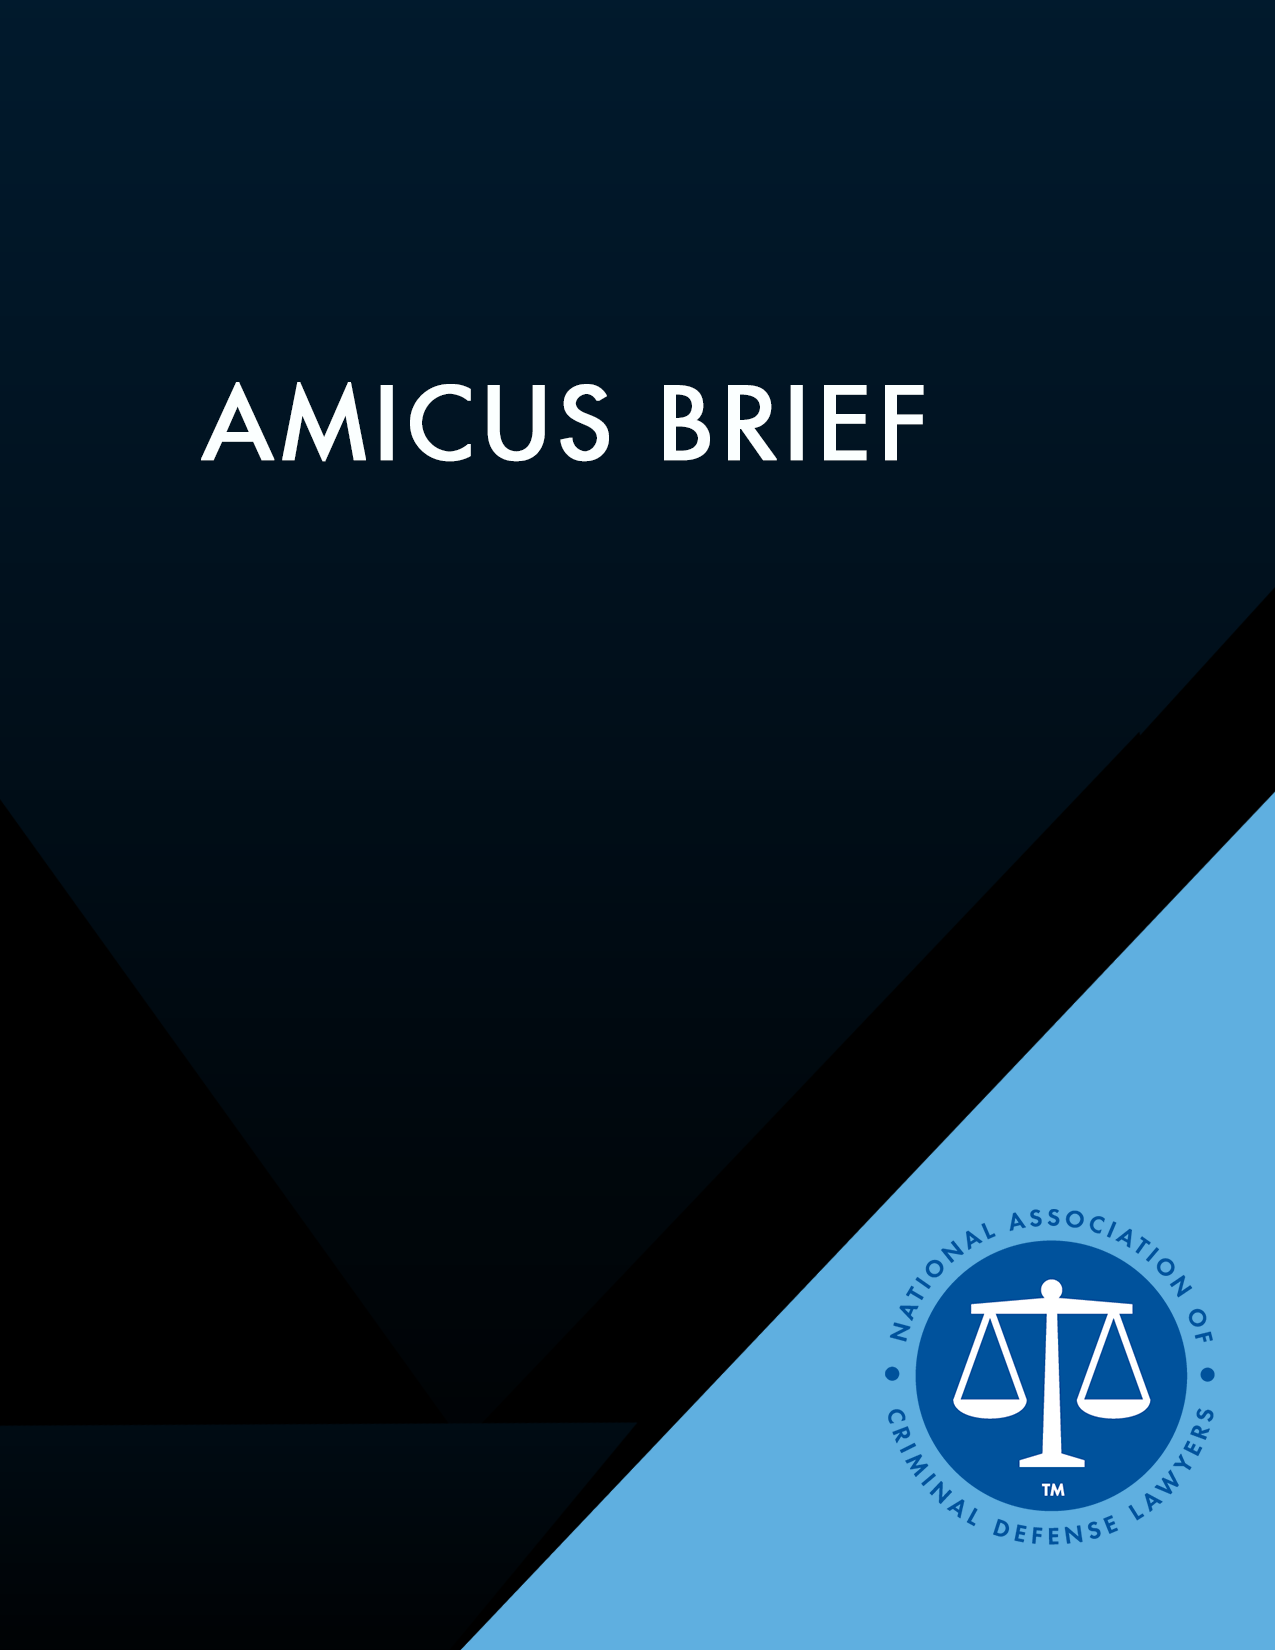 Amicus brief graphic